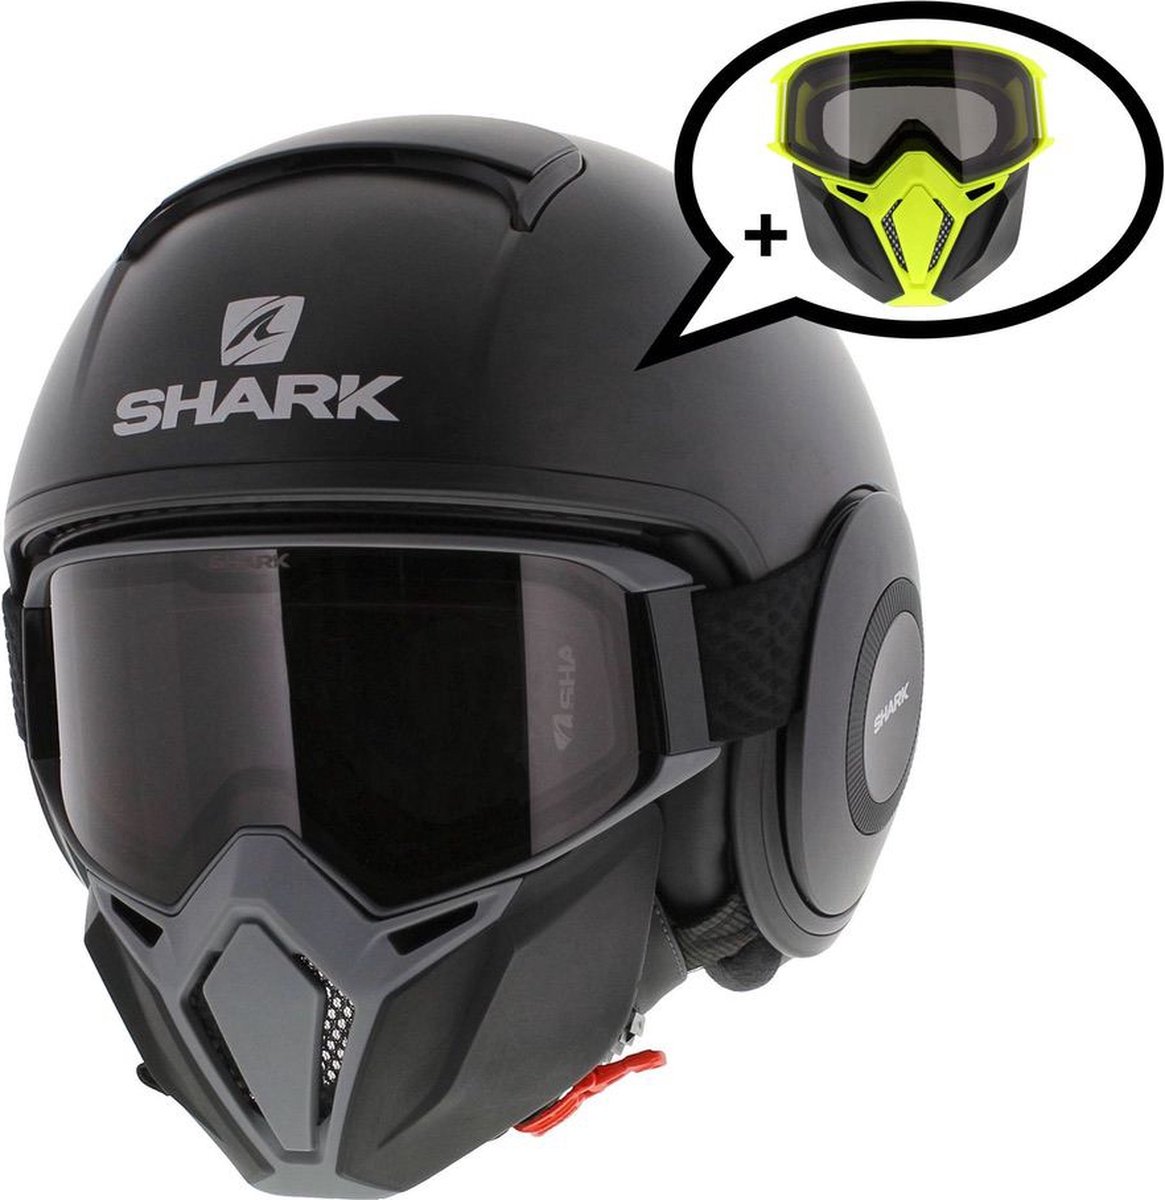 Shark Street Drak helm mat zwart antraciet XL - Special Edition met gratis extra zwart geel mondstuk